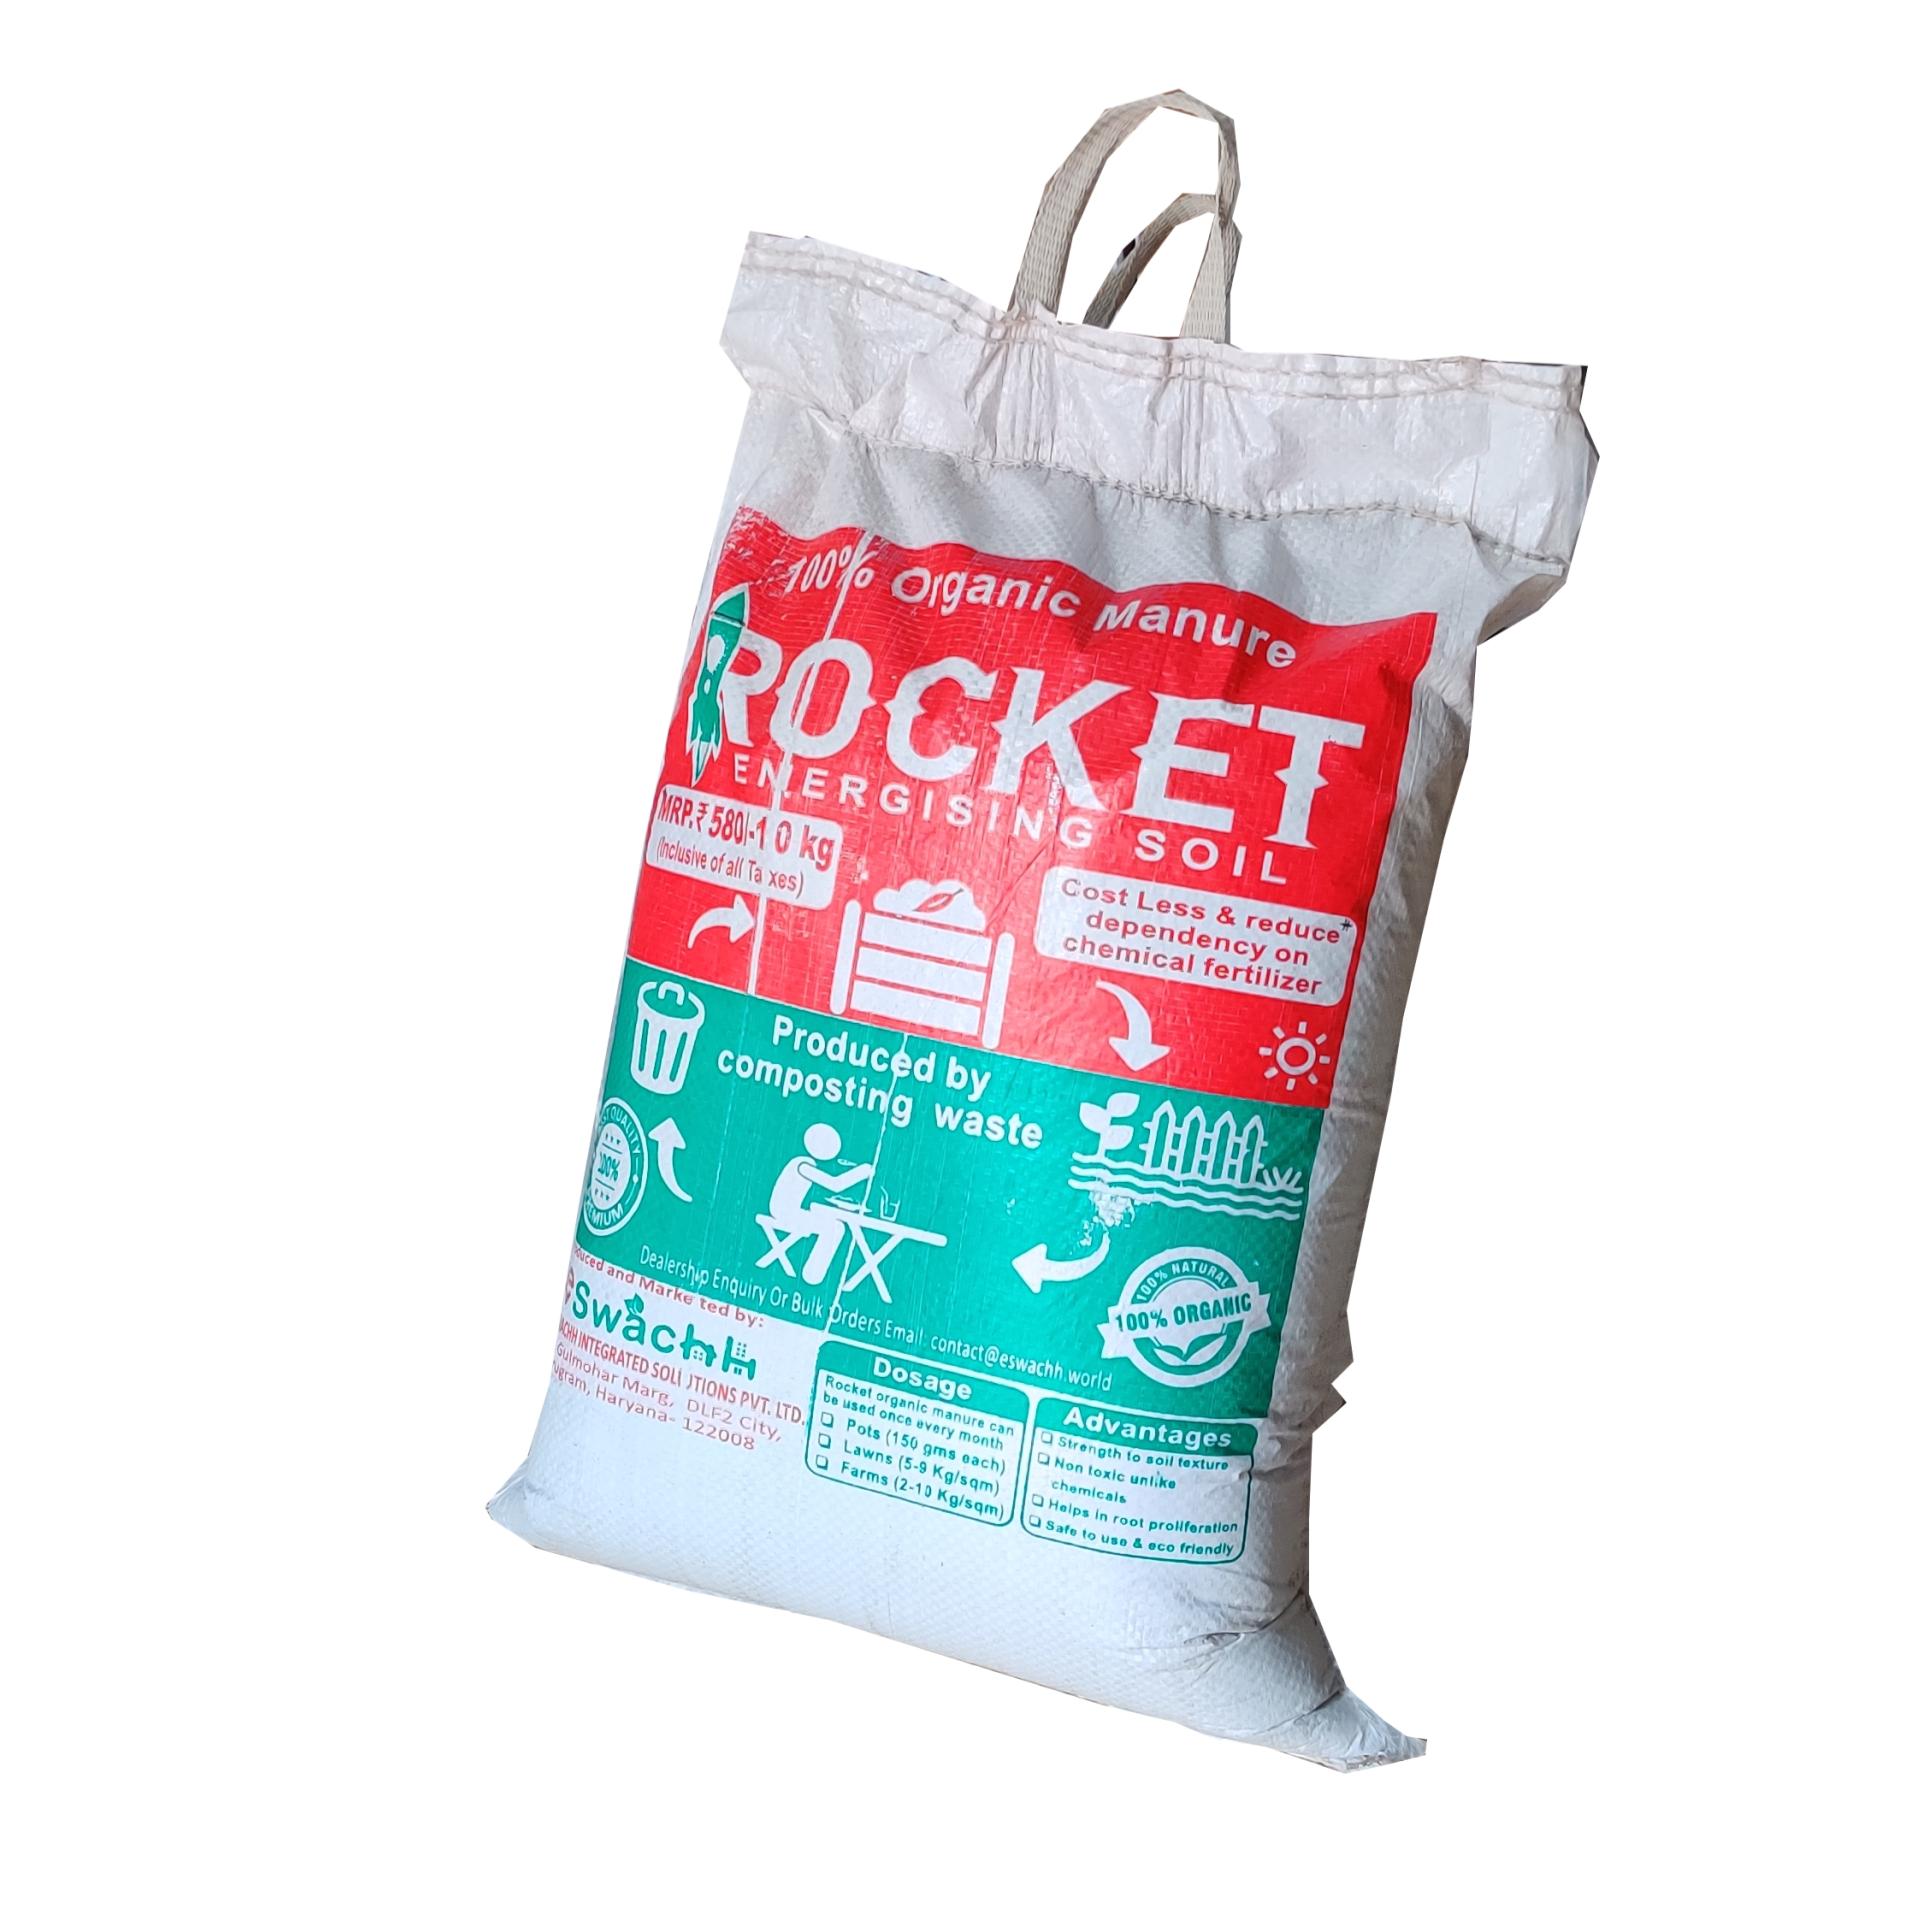 Rocket Organic Manure